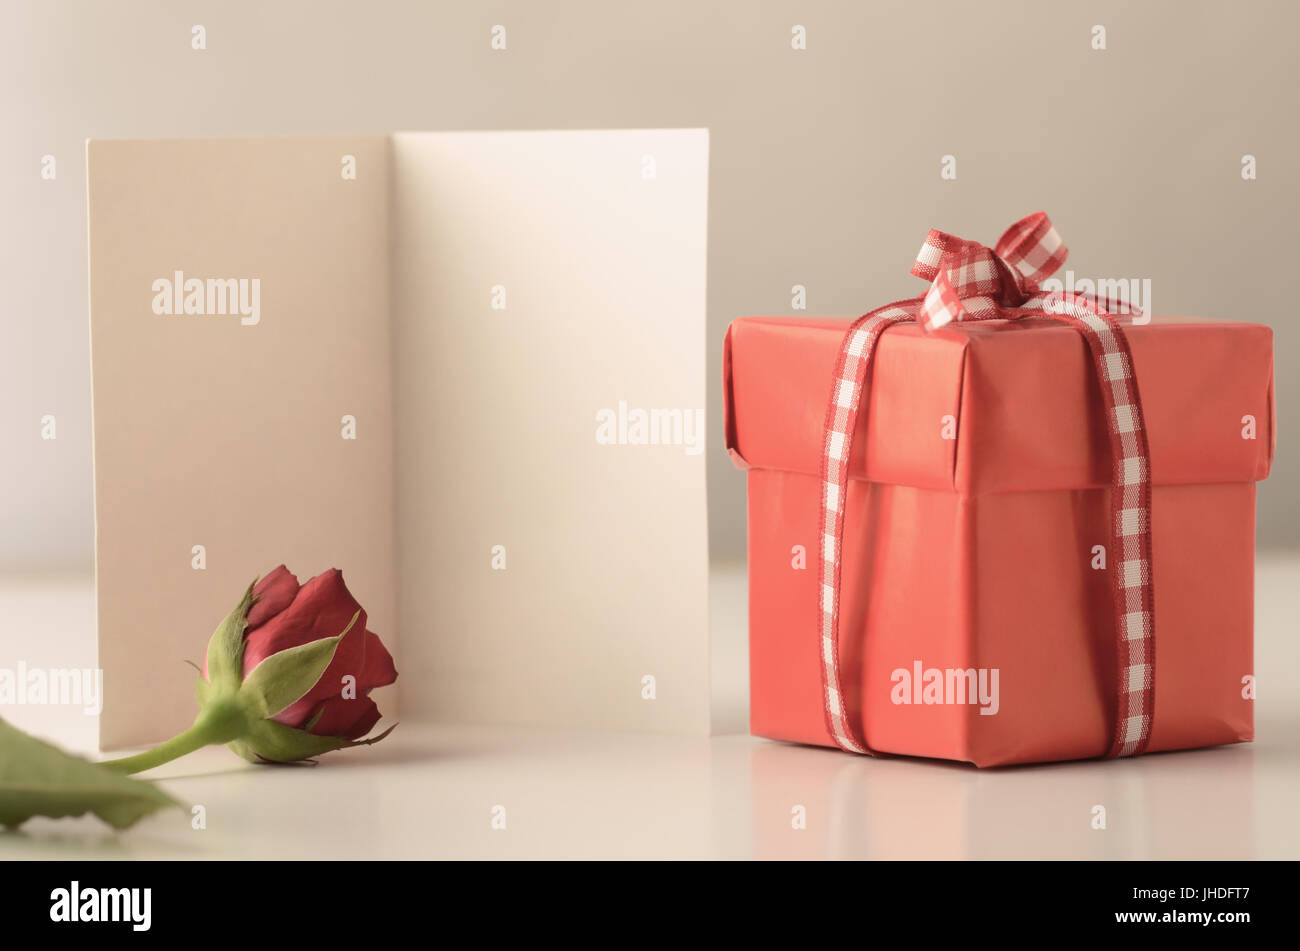 Una sola plaza pequeña caja de regalo con tapa, atado a un lazo con cinta de tela de algodón a cuadros en un cuadro blanco con una rosa y una tarjeta que proporciona copia de espacio abierto. Foto de stock